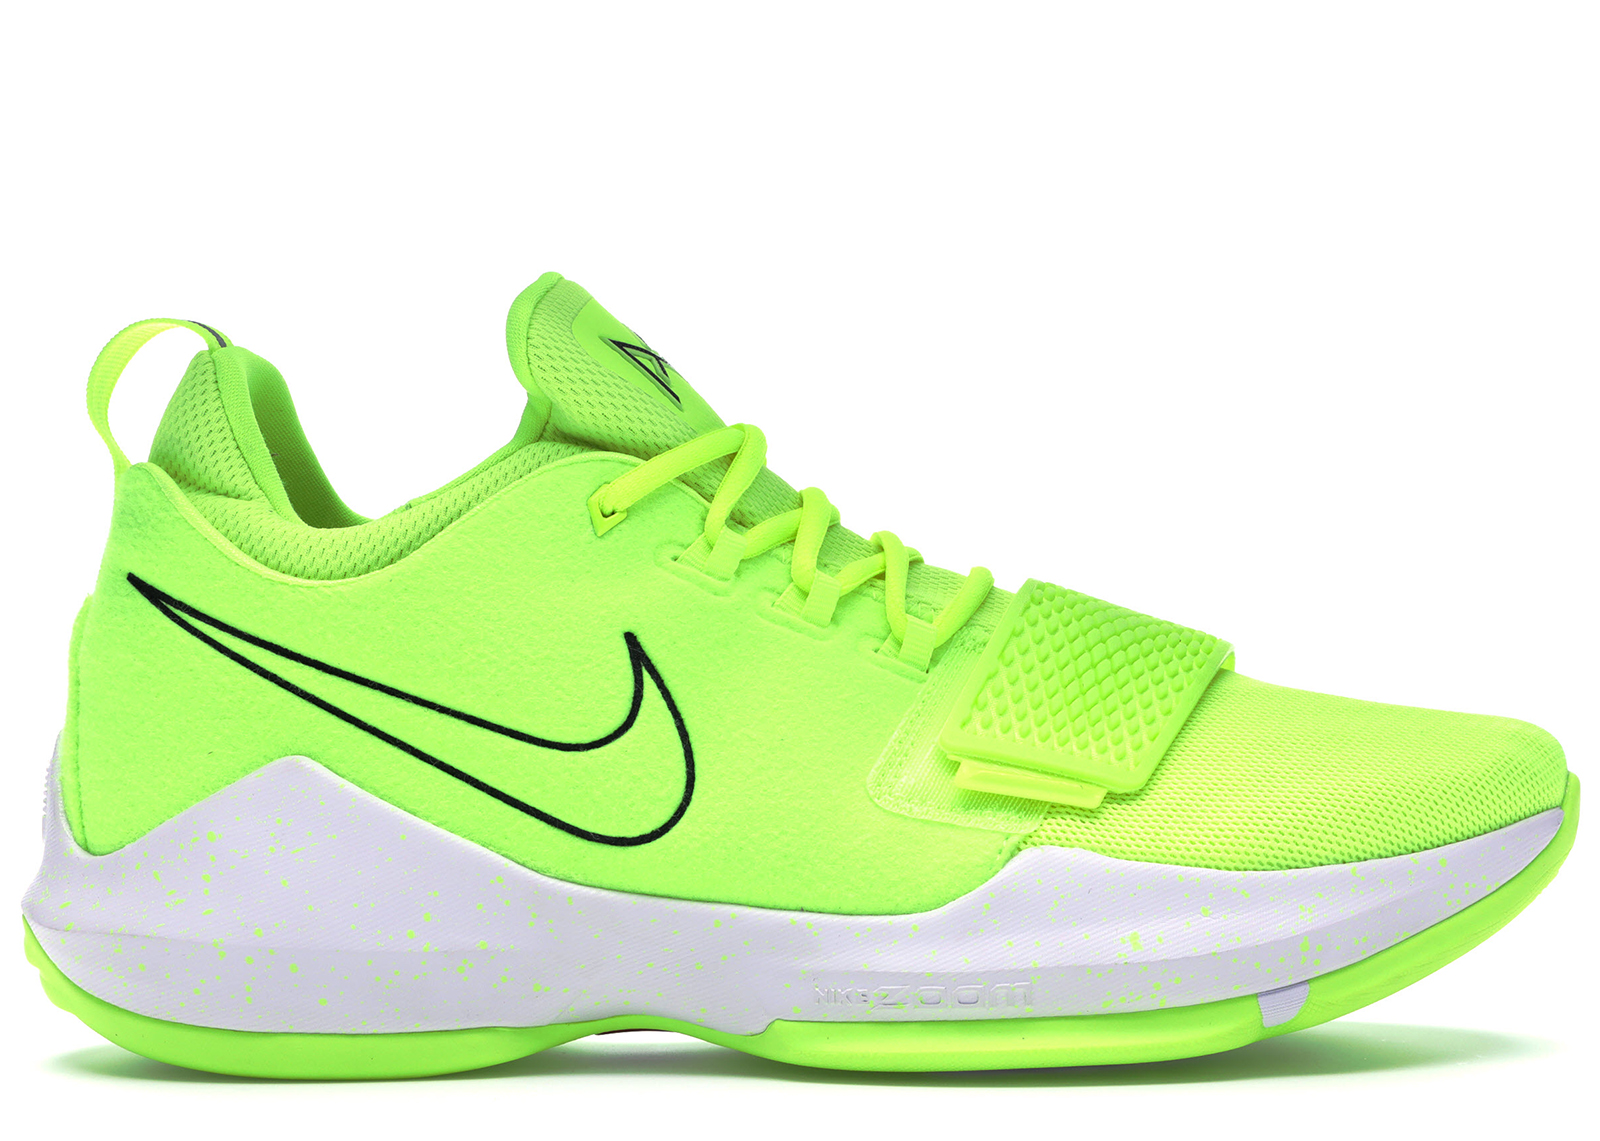 Nike PG 1 Volt メンズ - 878627-700 - JP